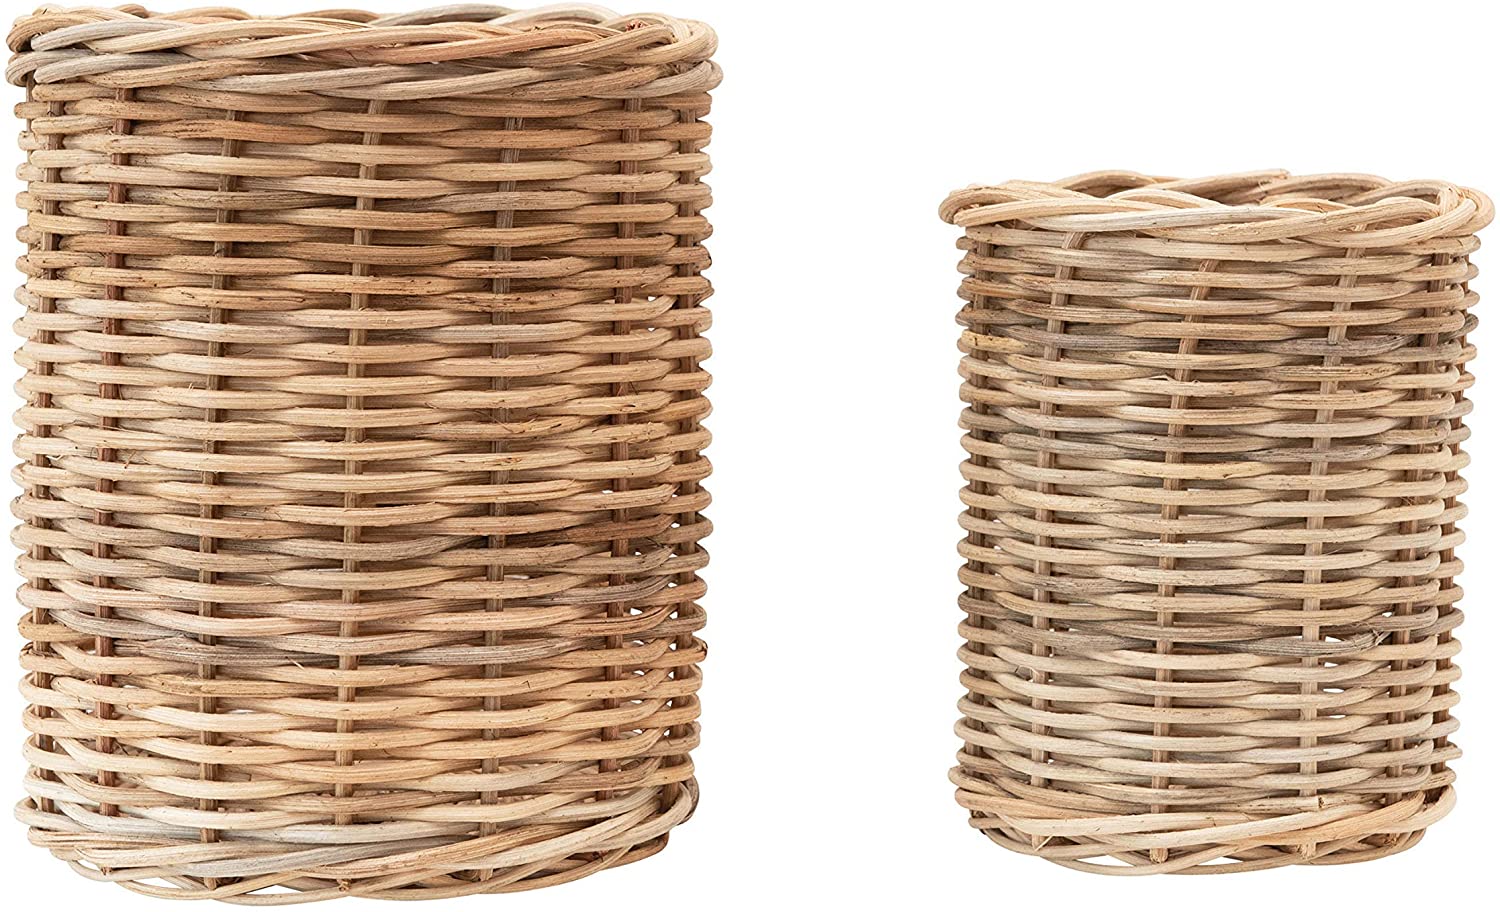 Hand Woven Wicker Baskets